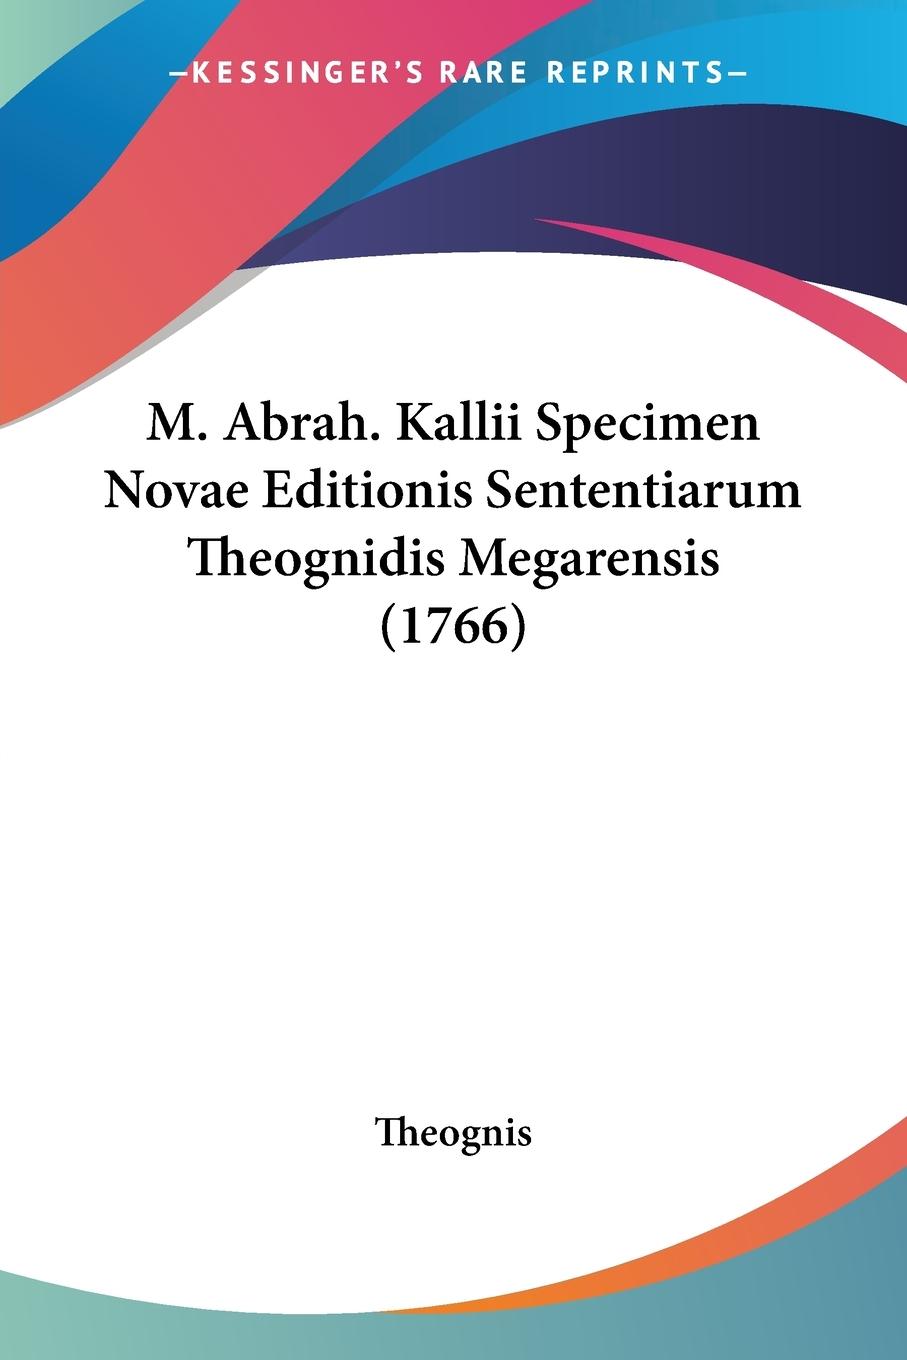 M. Abrah. Kallii Specimen Novae Editionis Sententiarum Theognidis Megarensis (1766) - Theognis